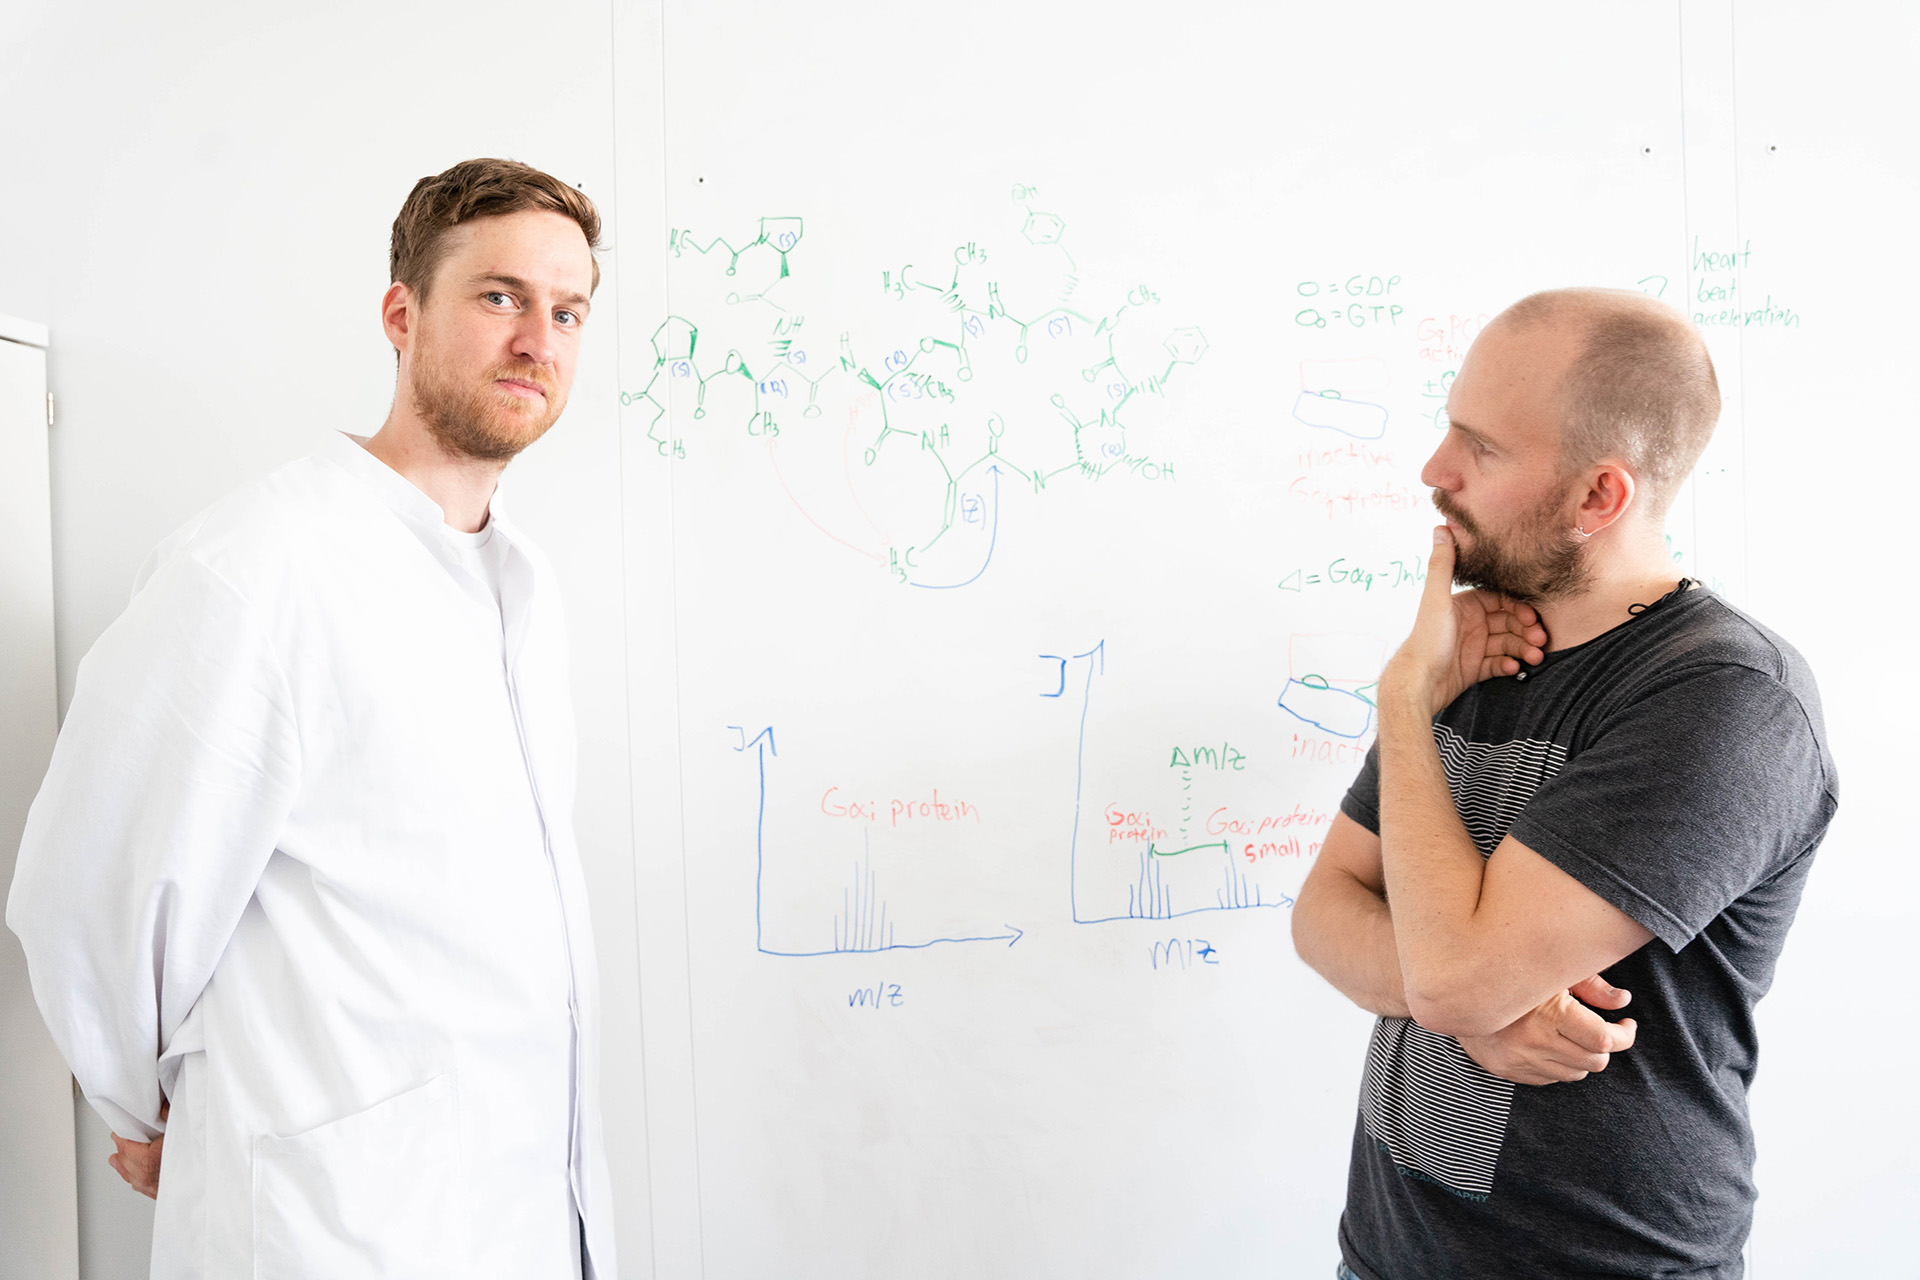 Raphael Reher (links) und Daniel Petras (rechts) diskutieren ihre Ergebnisse am Whiteboard.